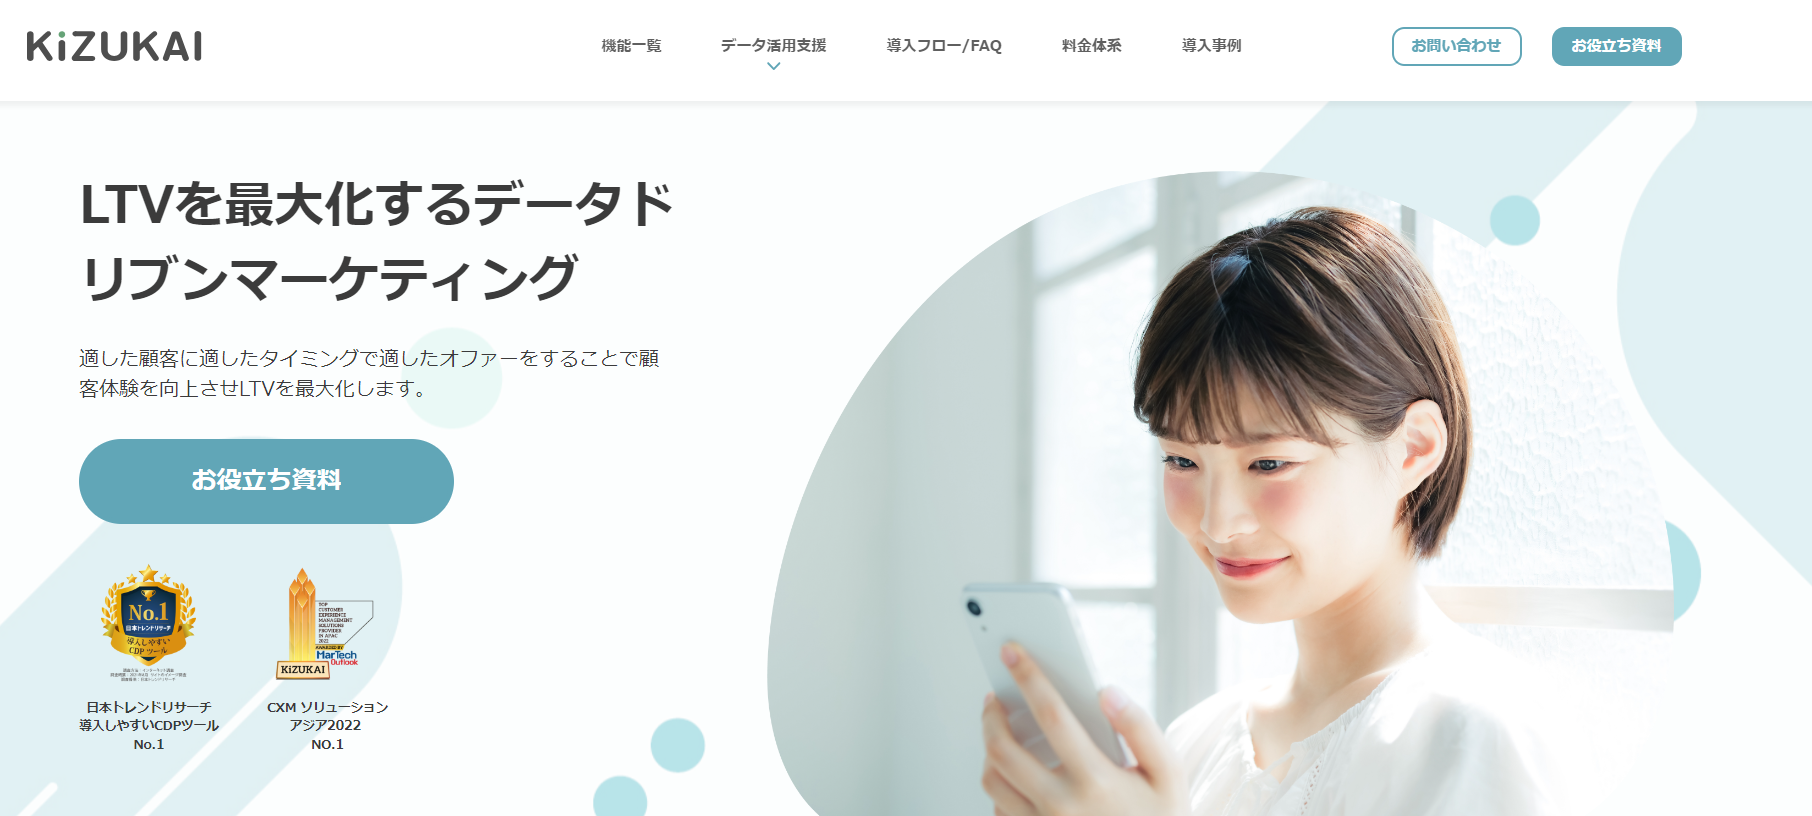 ヘルススコアツールのKiZUKAI公式サイトキャプチャ画像